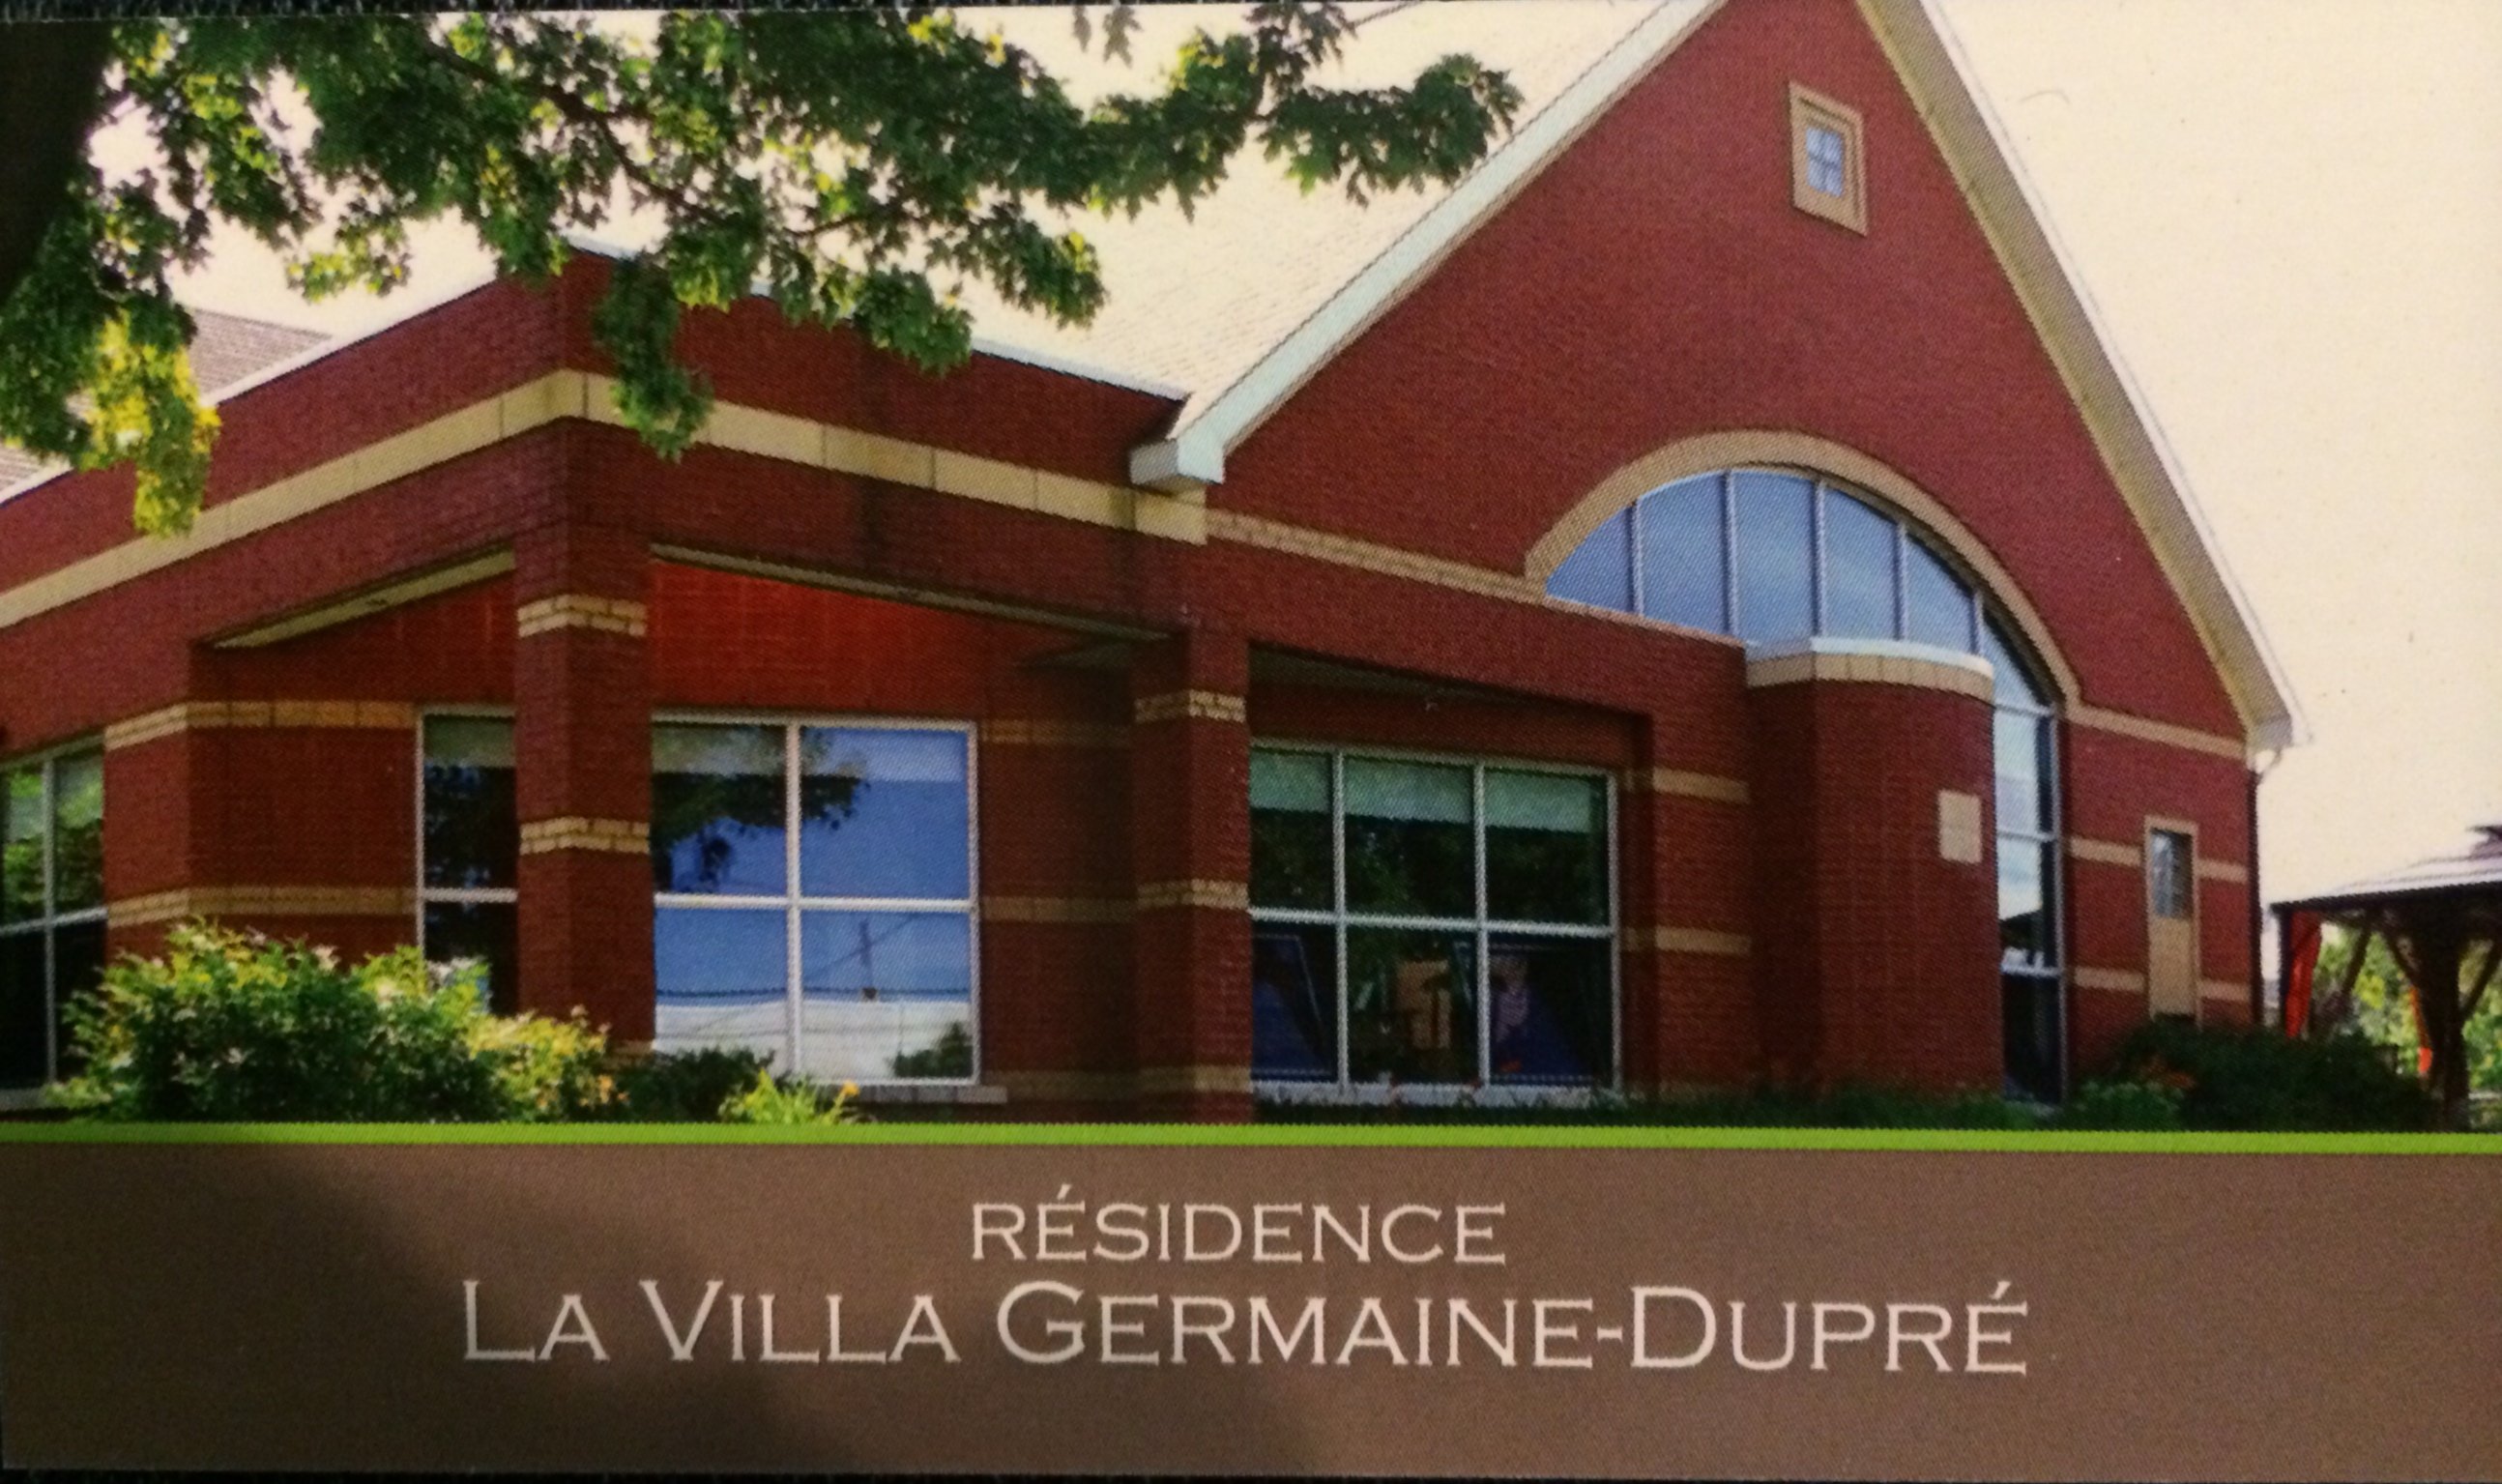 La Villa Germaine-Dupré